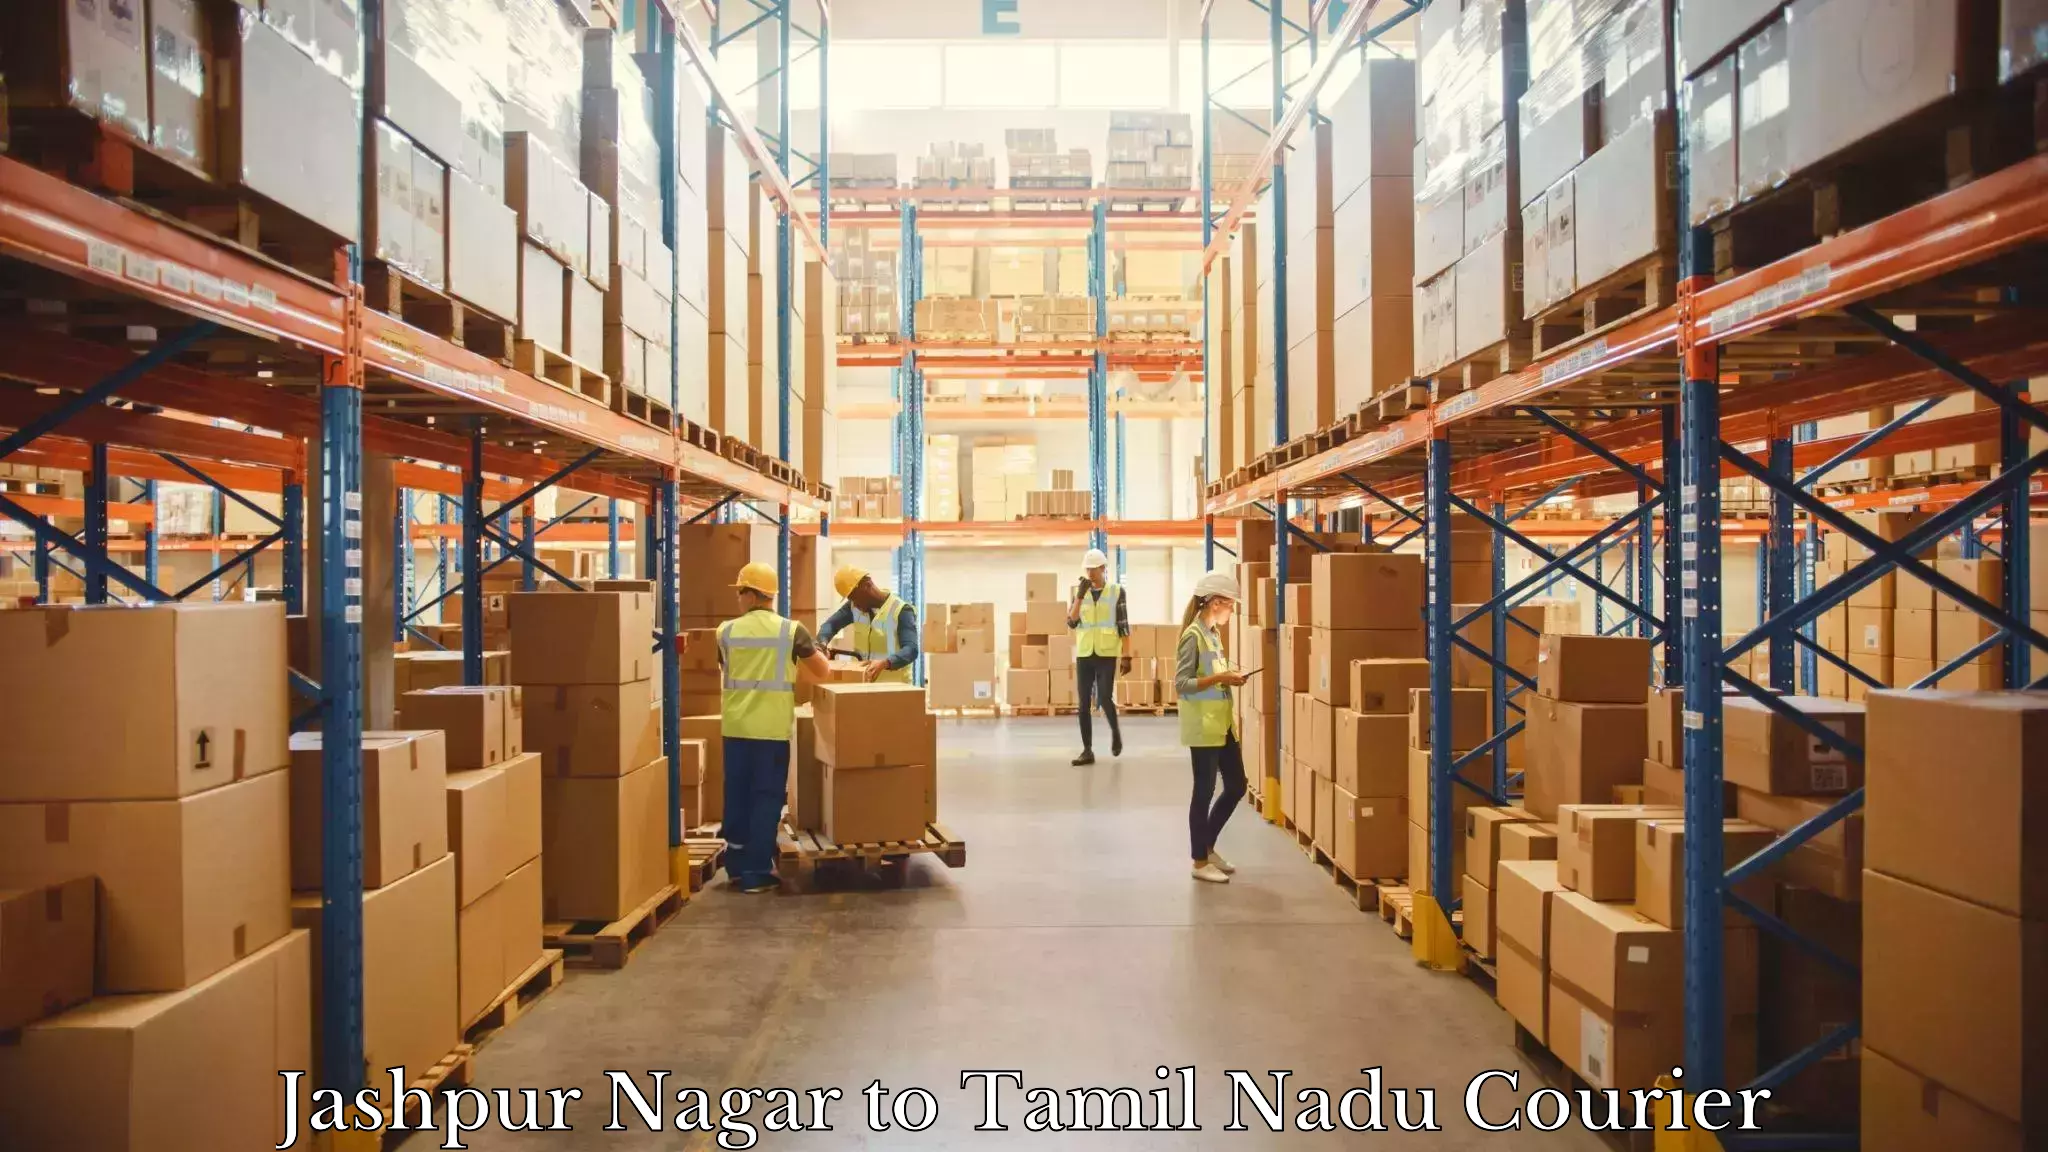 International parcel service Jashpur Nagar to Dharmapuri